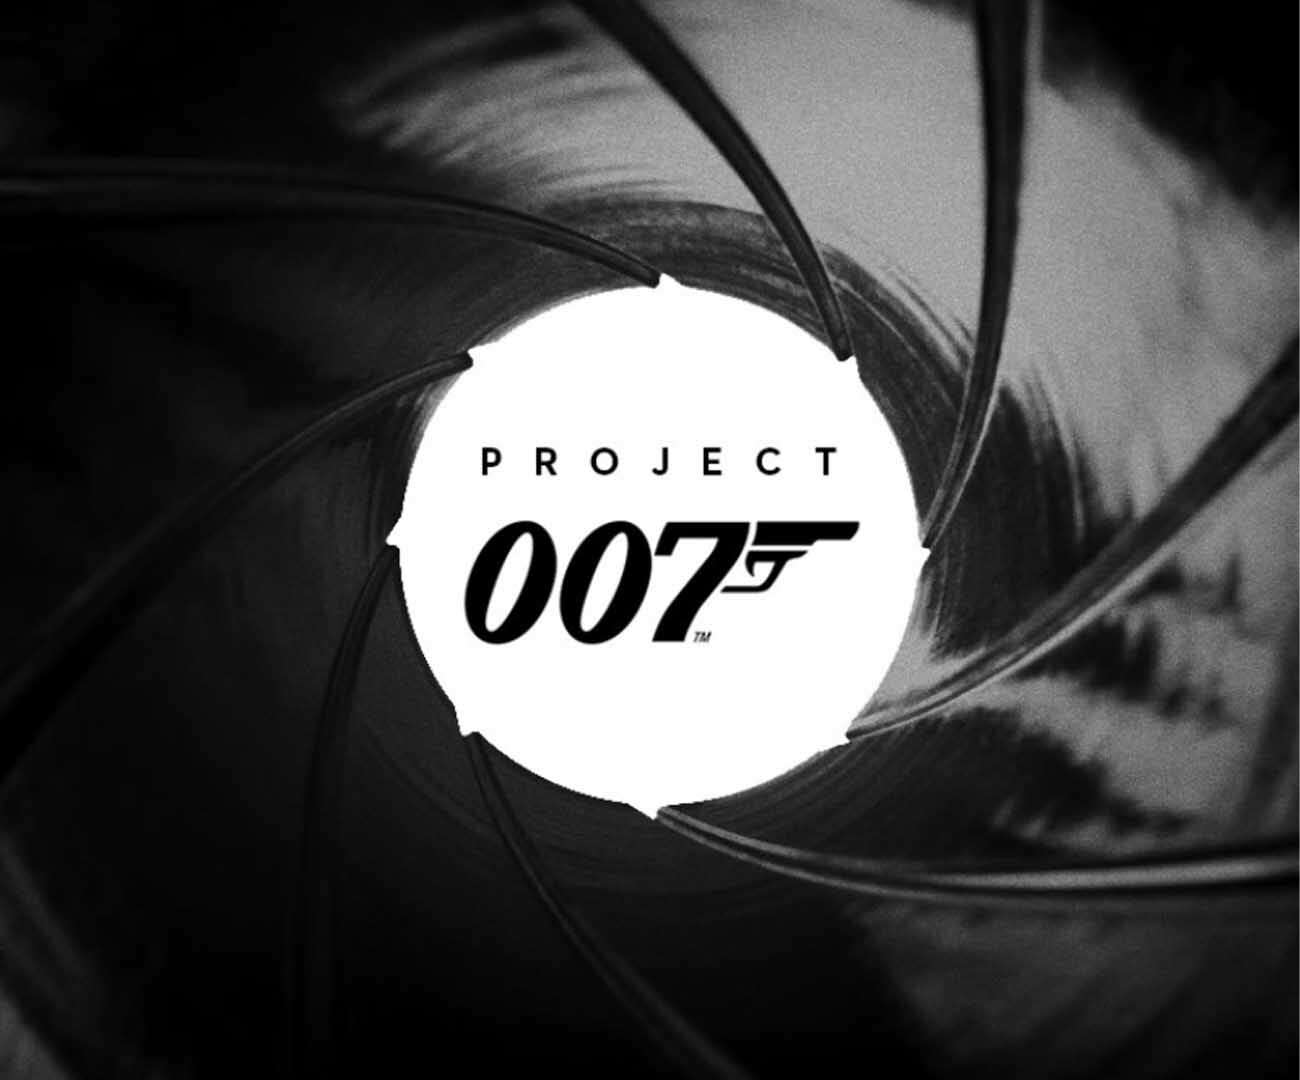 007, ioi